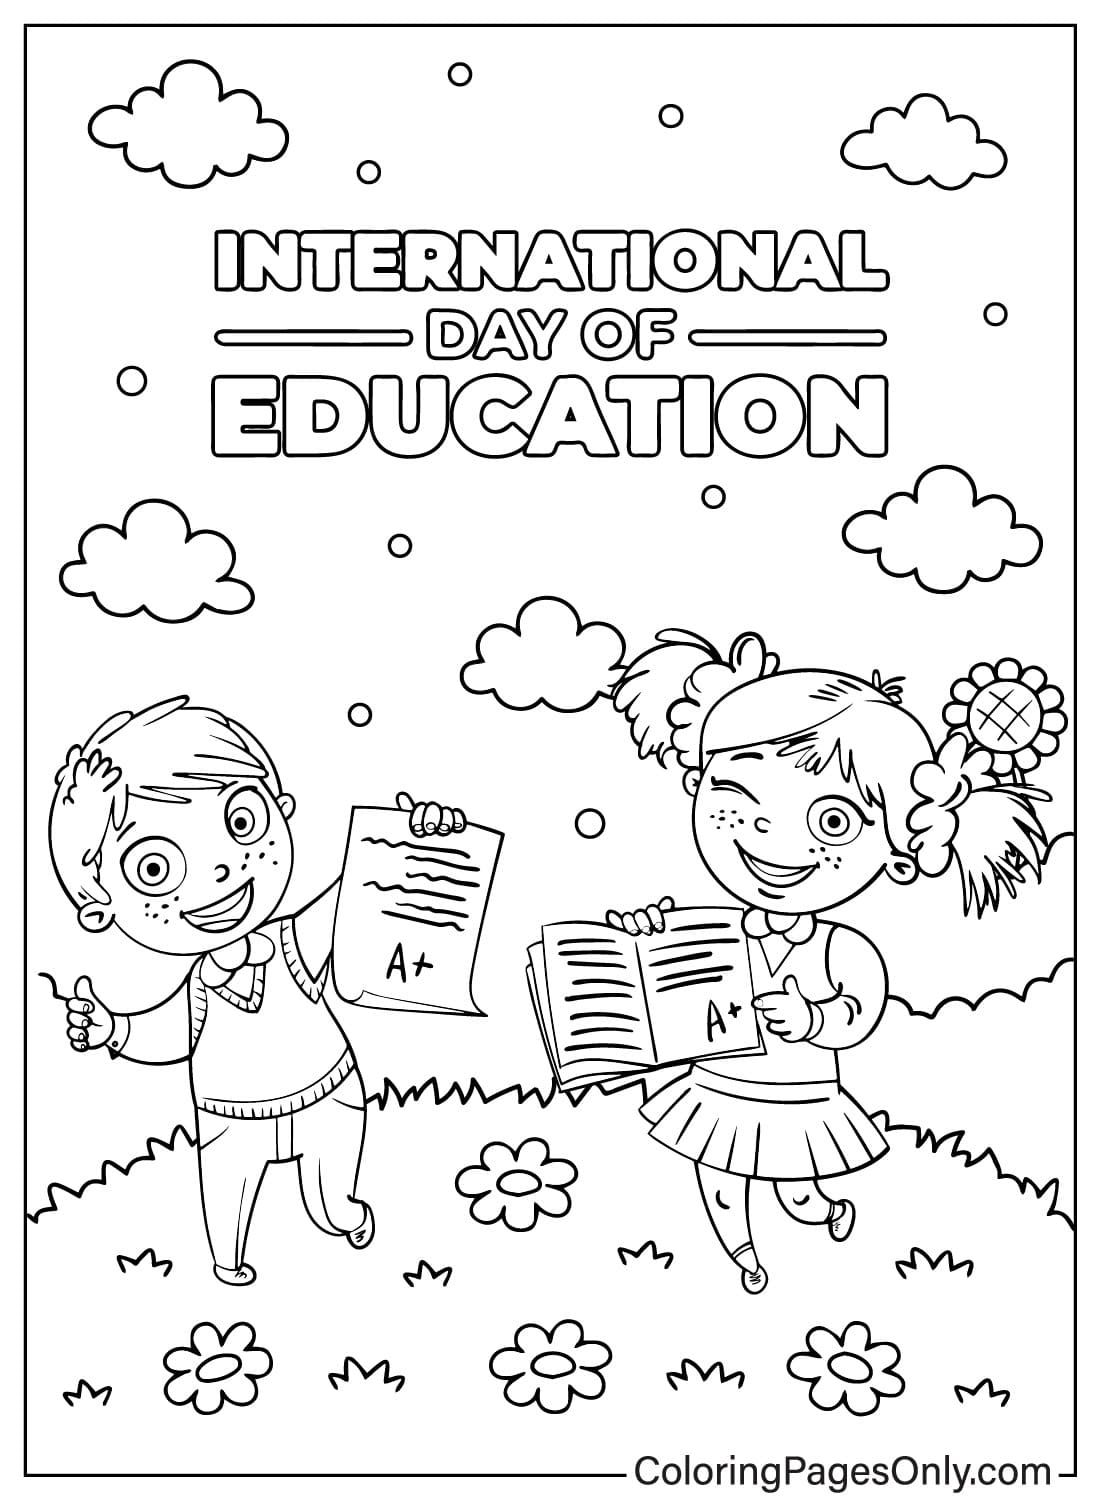 صفحات تلوين اليوم العالمي للتعليم للتحميل من اليوم العالمي للتعليم